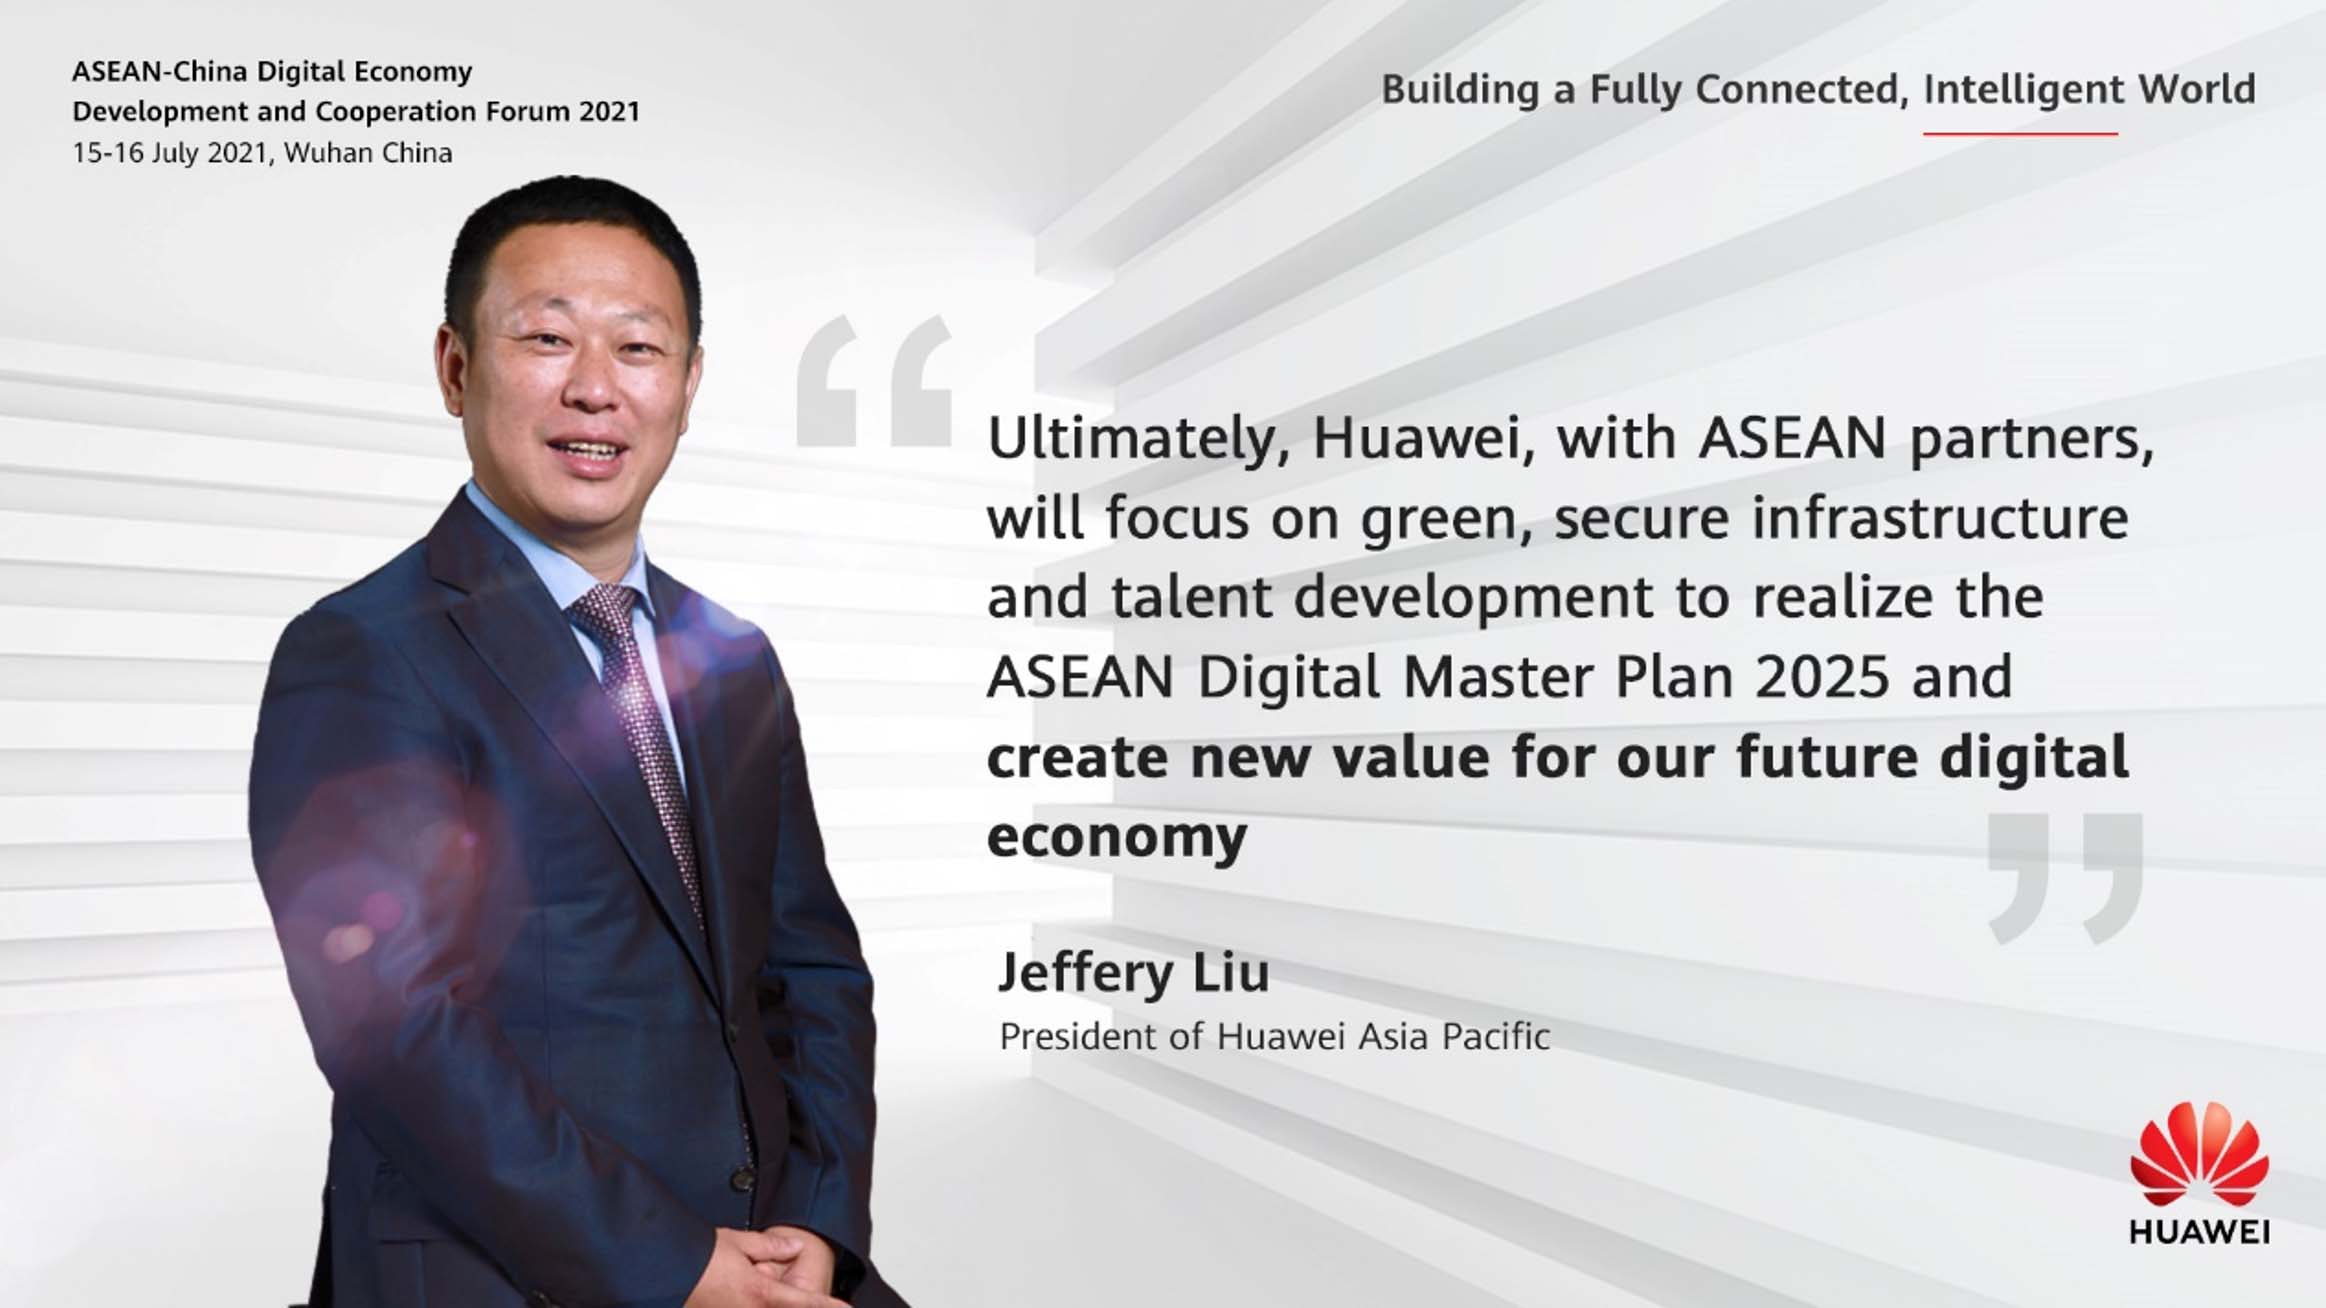 Huawei cam kết thúc đẩy mục tiêu phát triển xanh của ASEAN bằng các đổi mới sáng tạo về năng lượng số